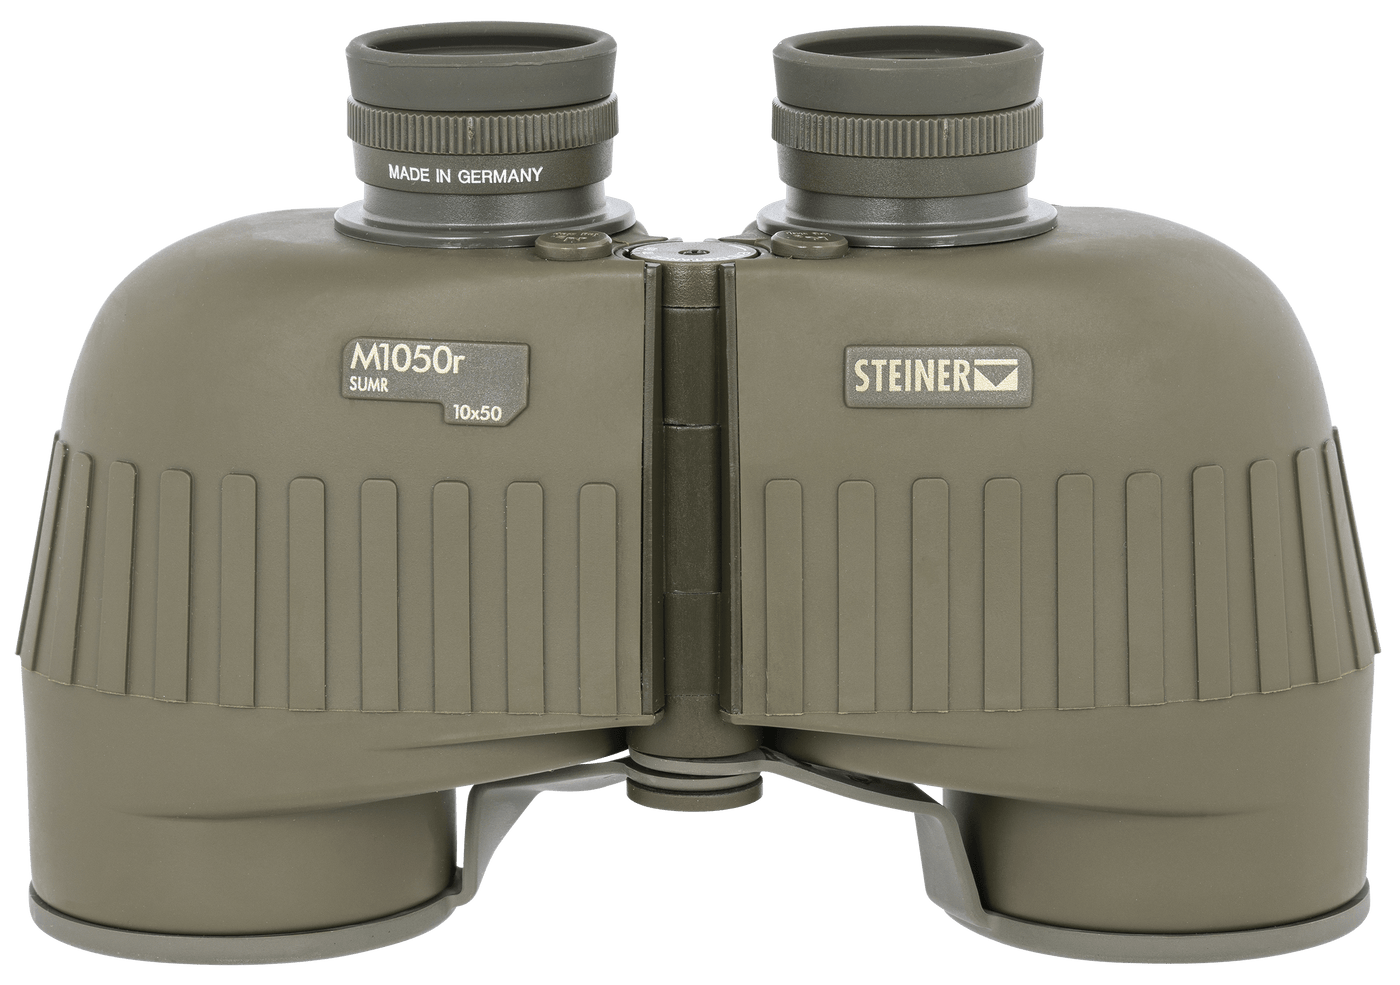 Steiner Steiner M1050, Steiner 2663          10x50 Military M1050r (sumr) Optics